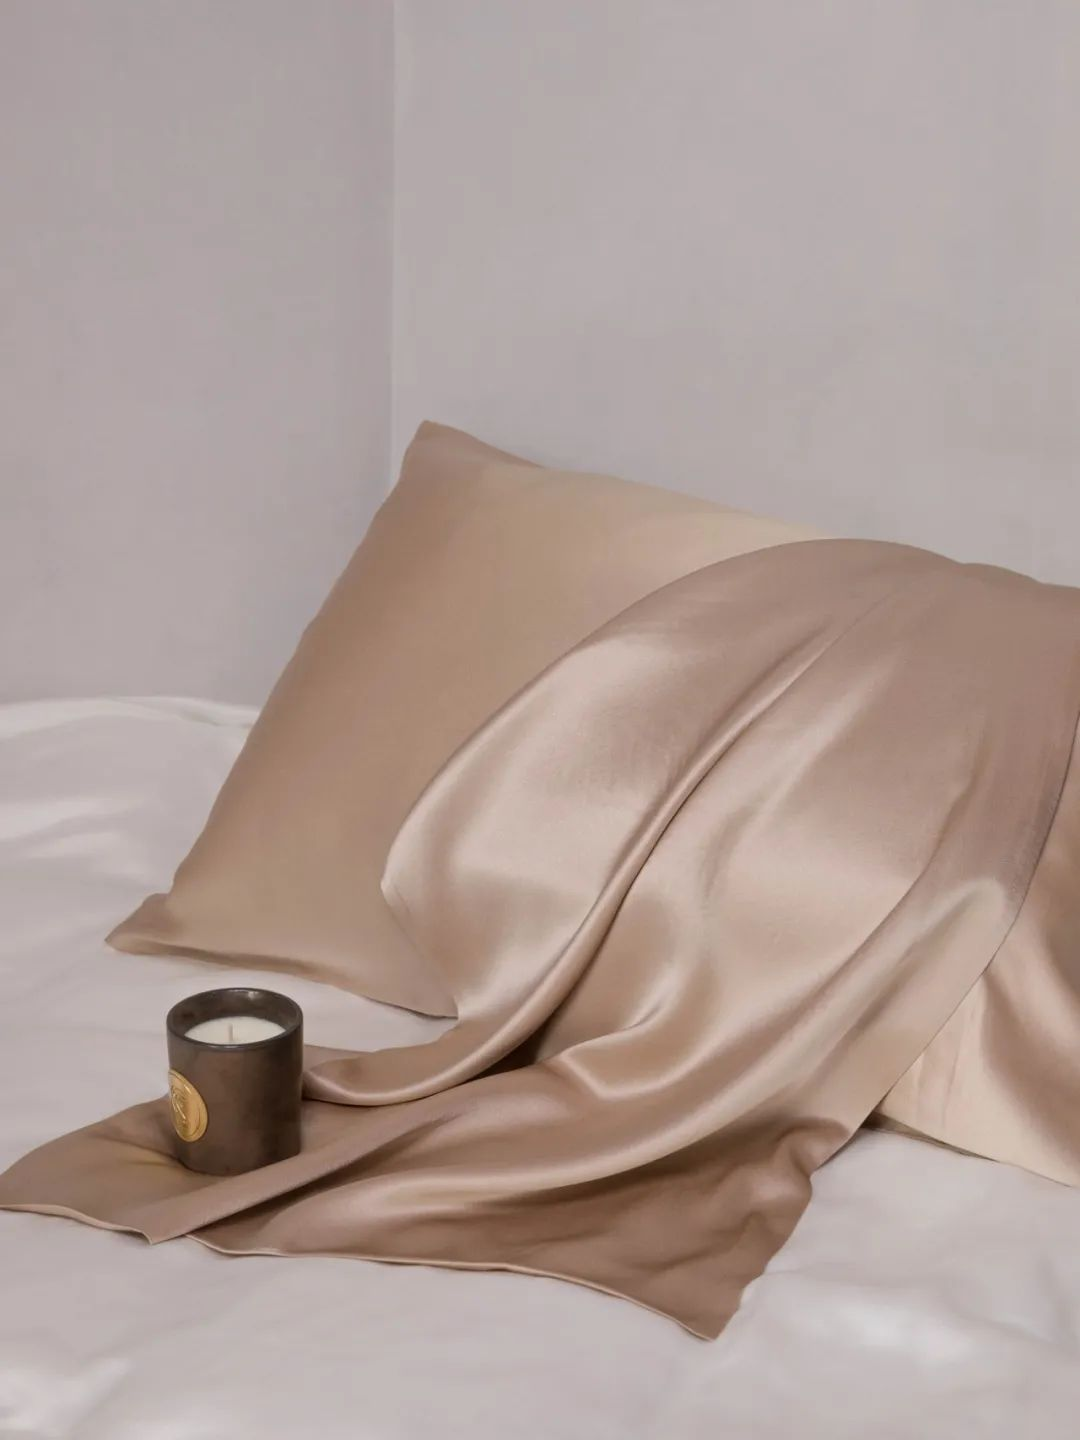 Luxus selyem: Fedezze fel a selyem párnahuzatok, szemmaszkok, sminkek, motorháztető előnyeit